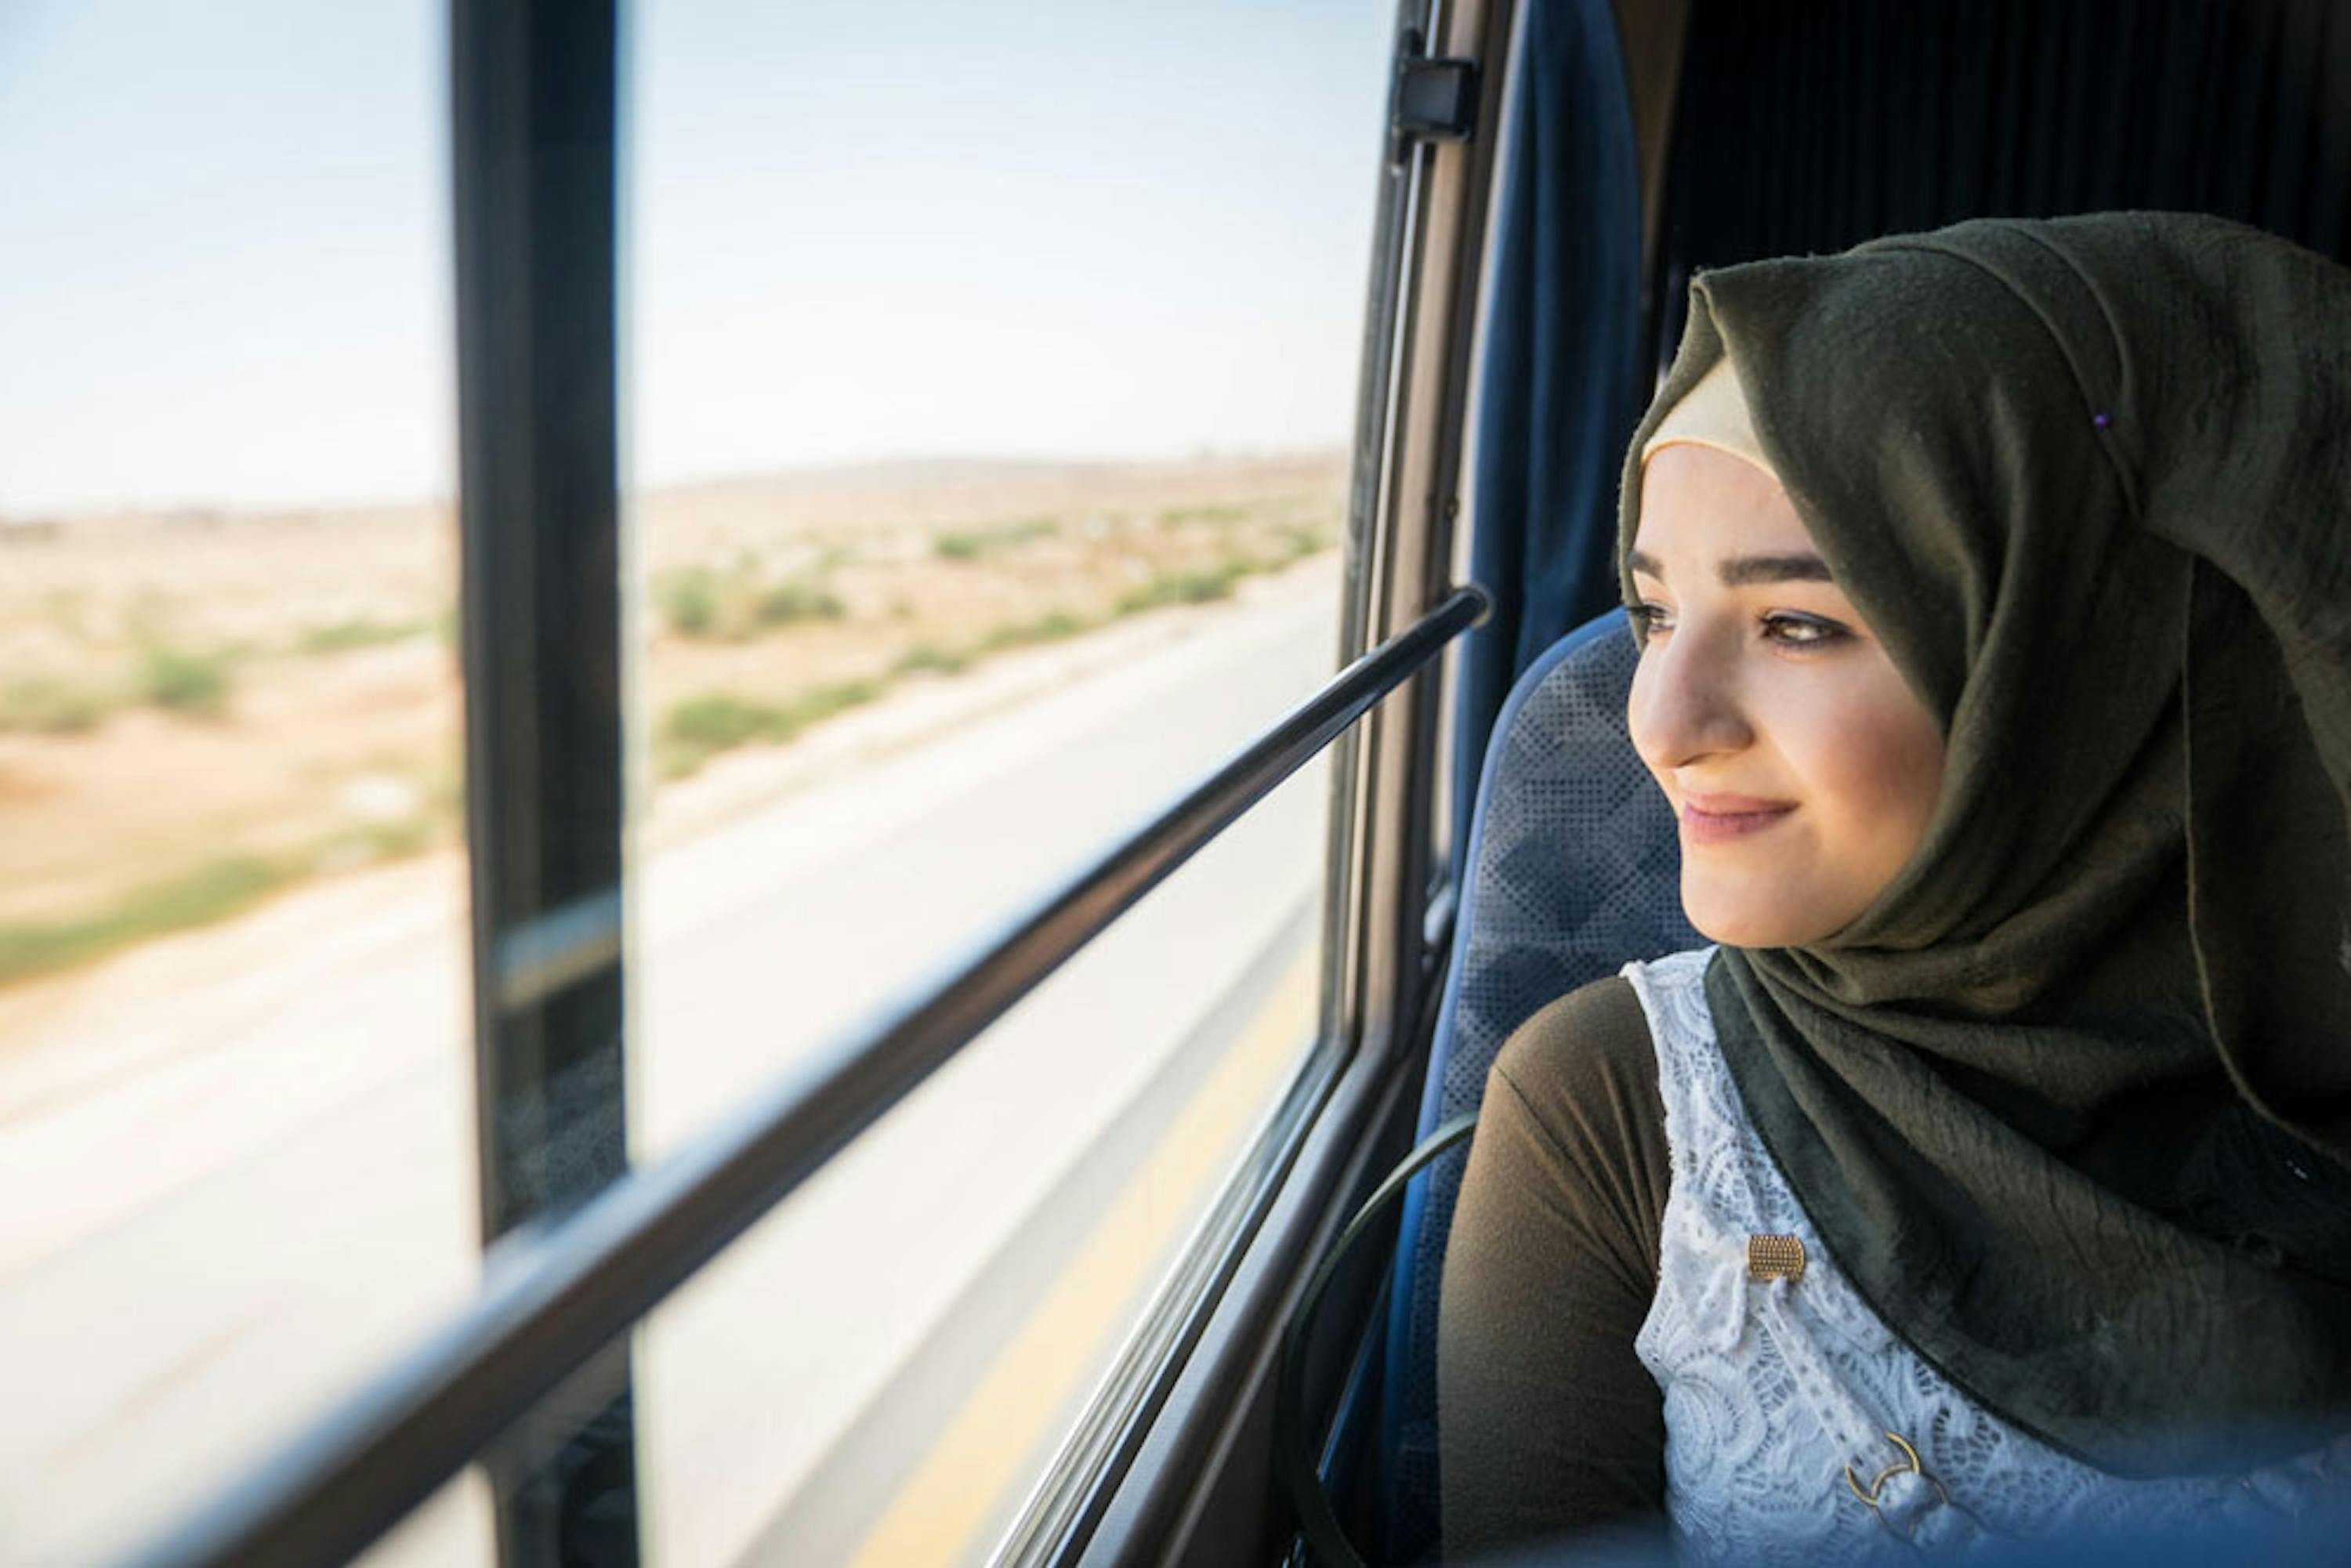 Siba, 18 anni, rifugiata siriana, sul bus che la porta dal campo profughi di Za'atari (Giordania) a un'attività di formazione professionale organizzata dall'UNICEF - ©UNICEF/UN0216407/Herwig